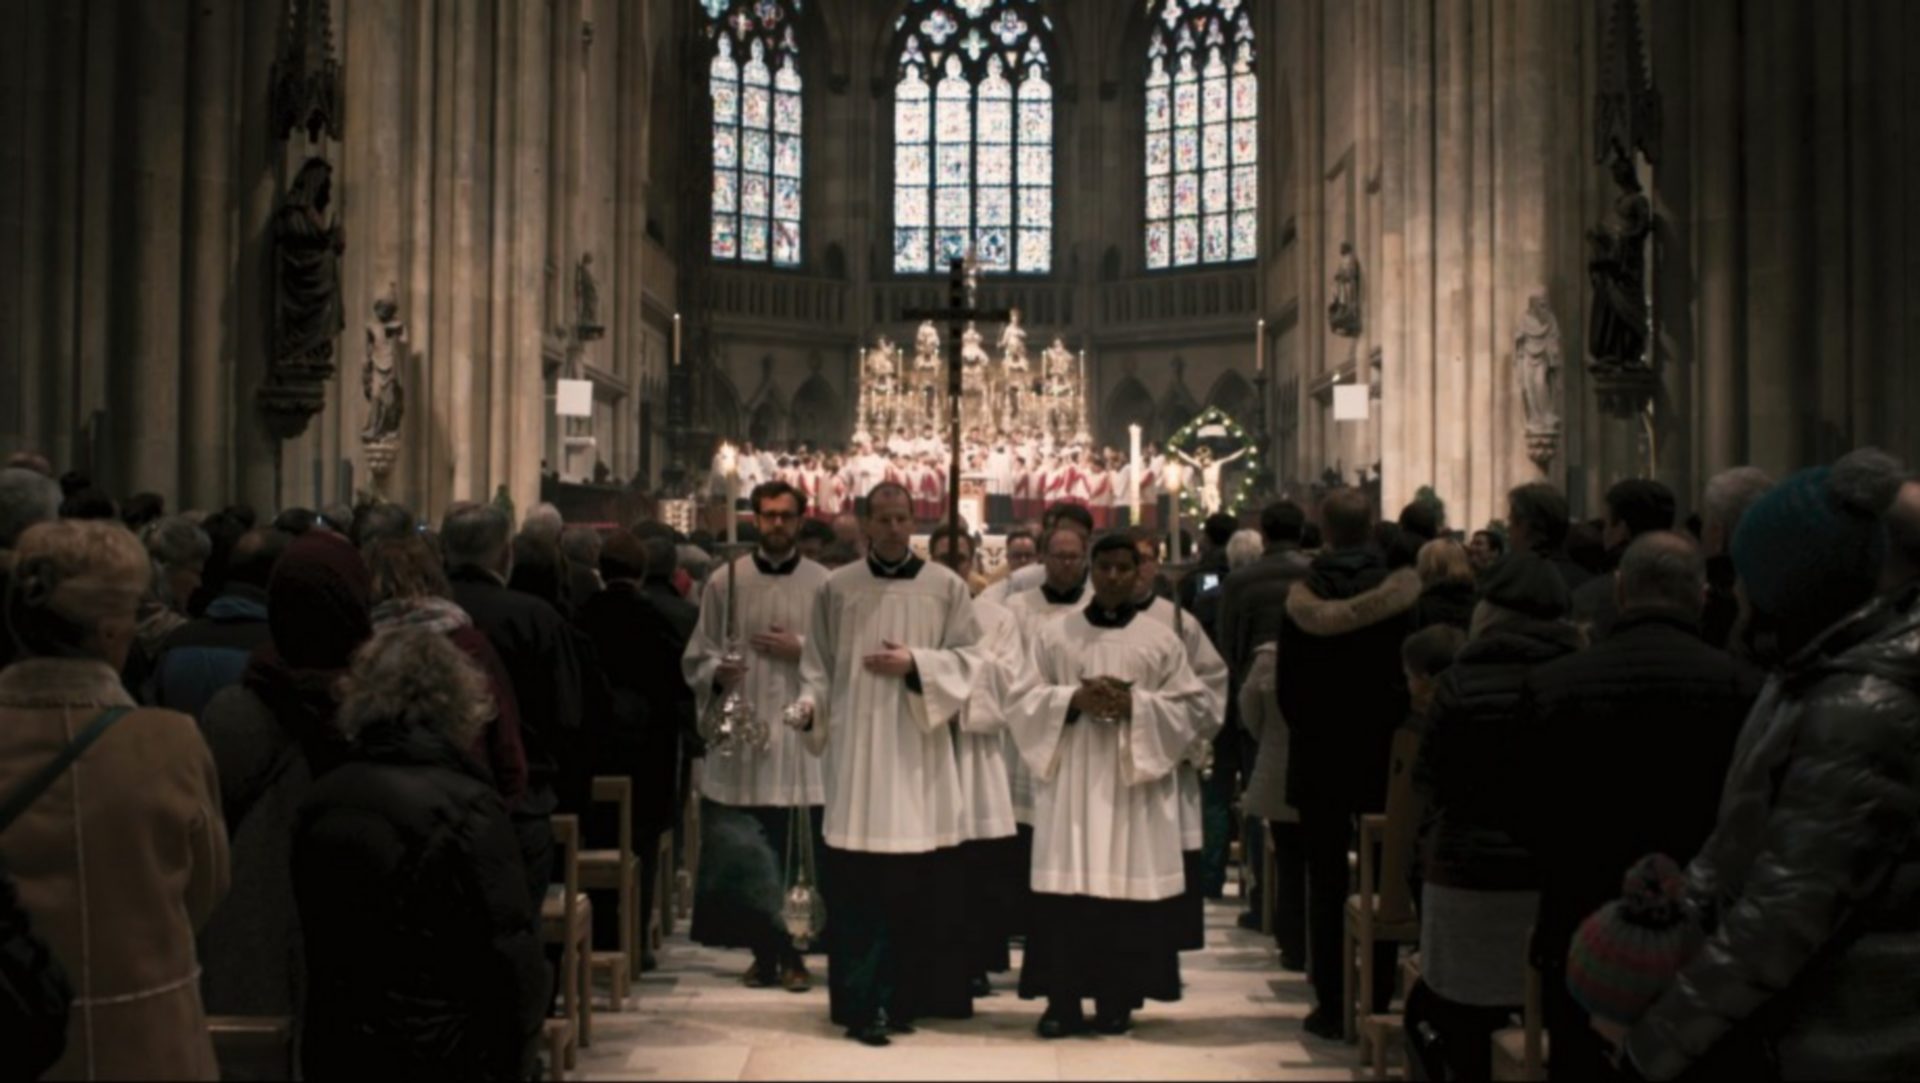 Le film "défenseur de la foi" a suscité de vives critiques en Allemagne | service de presse